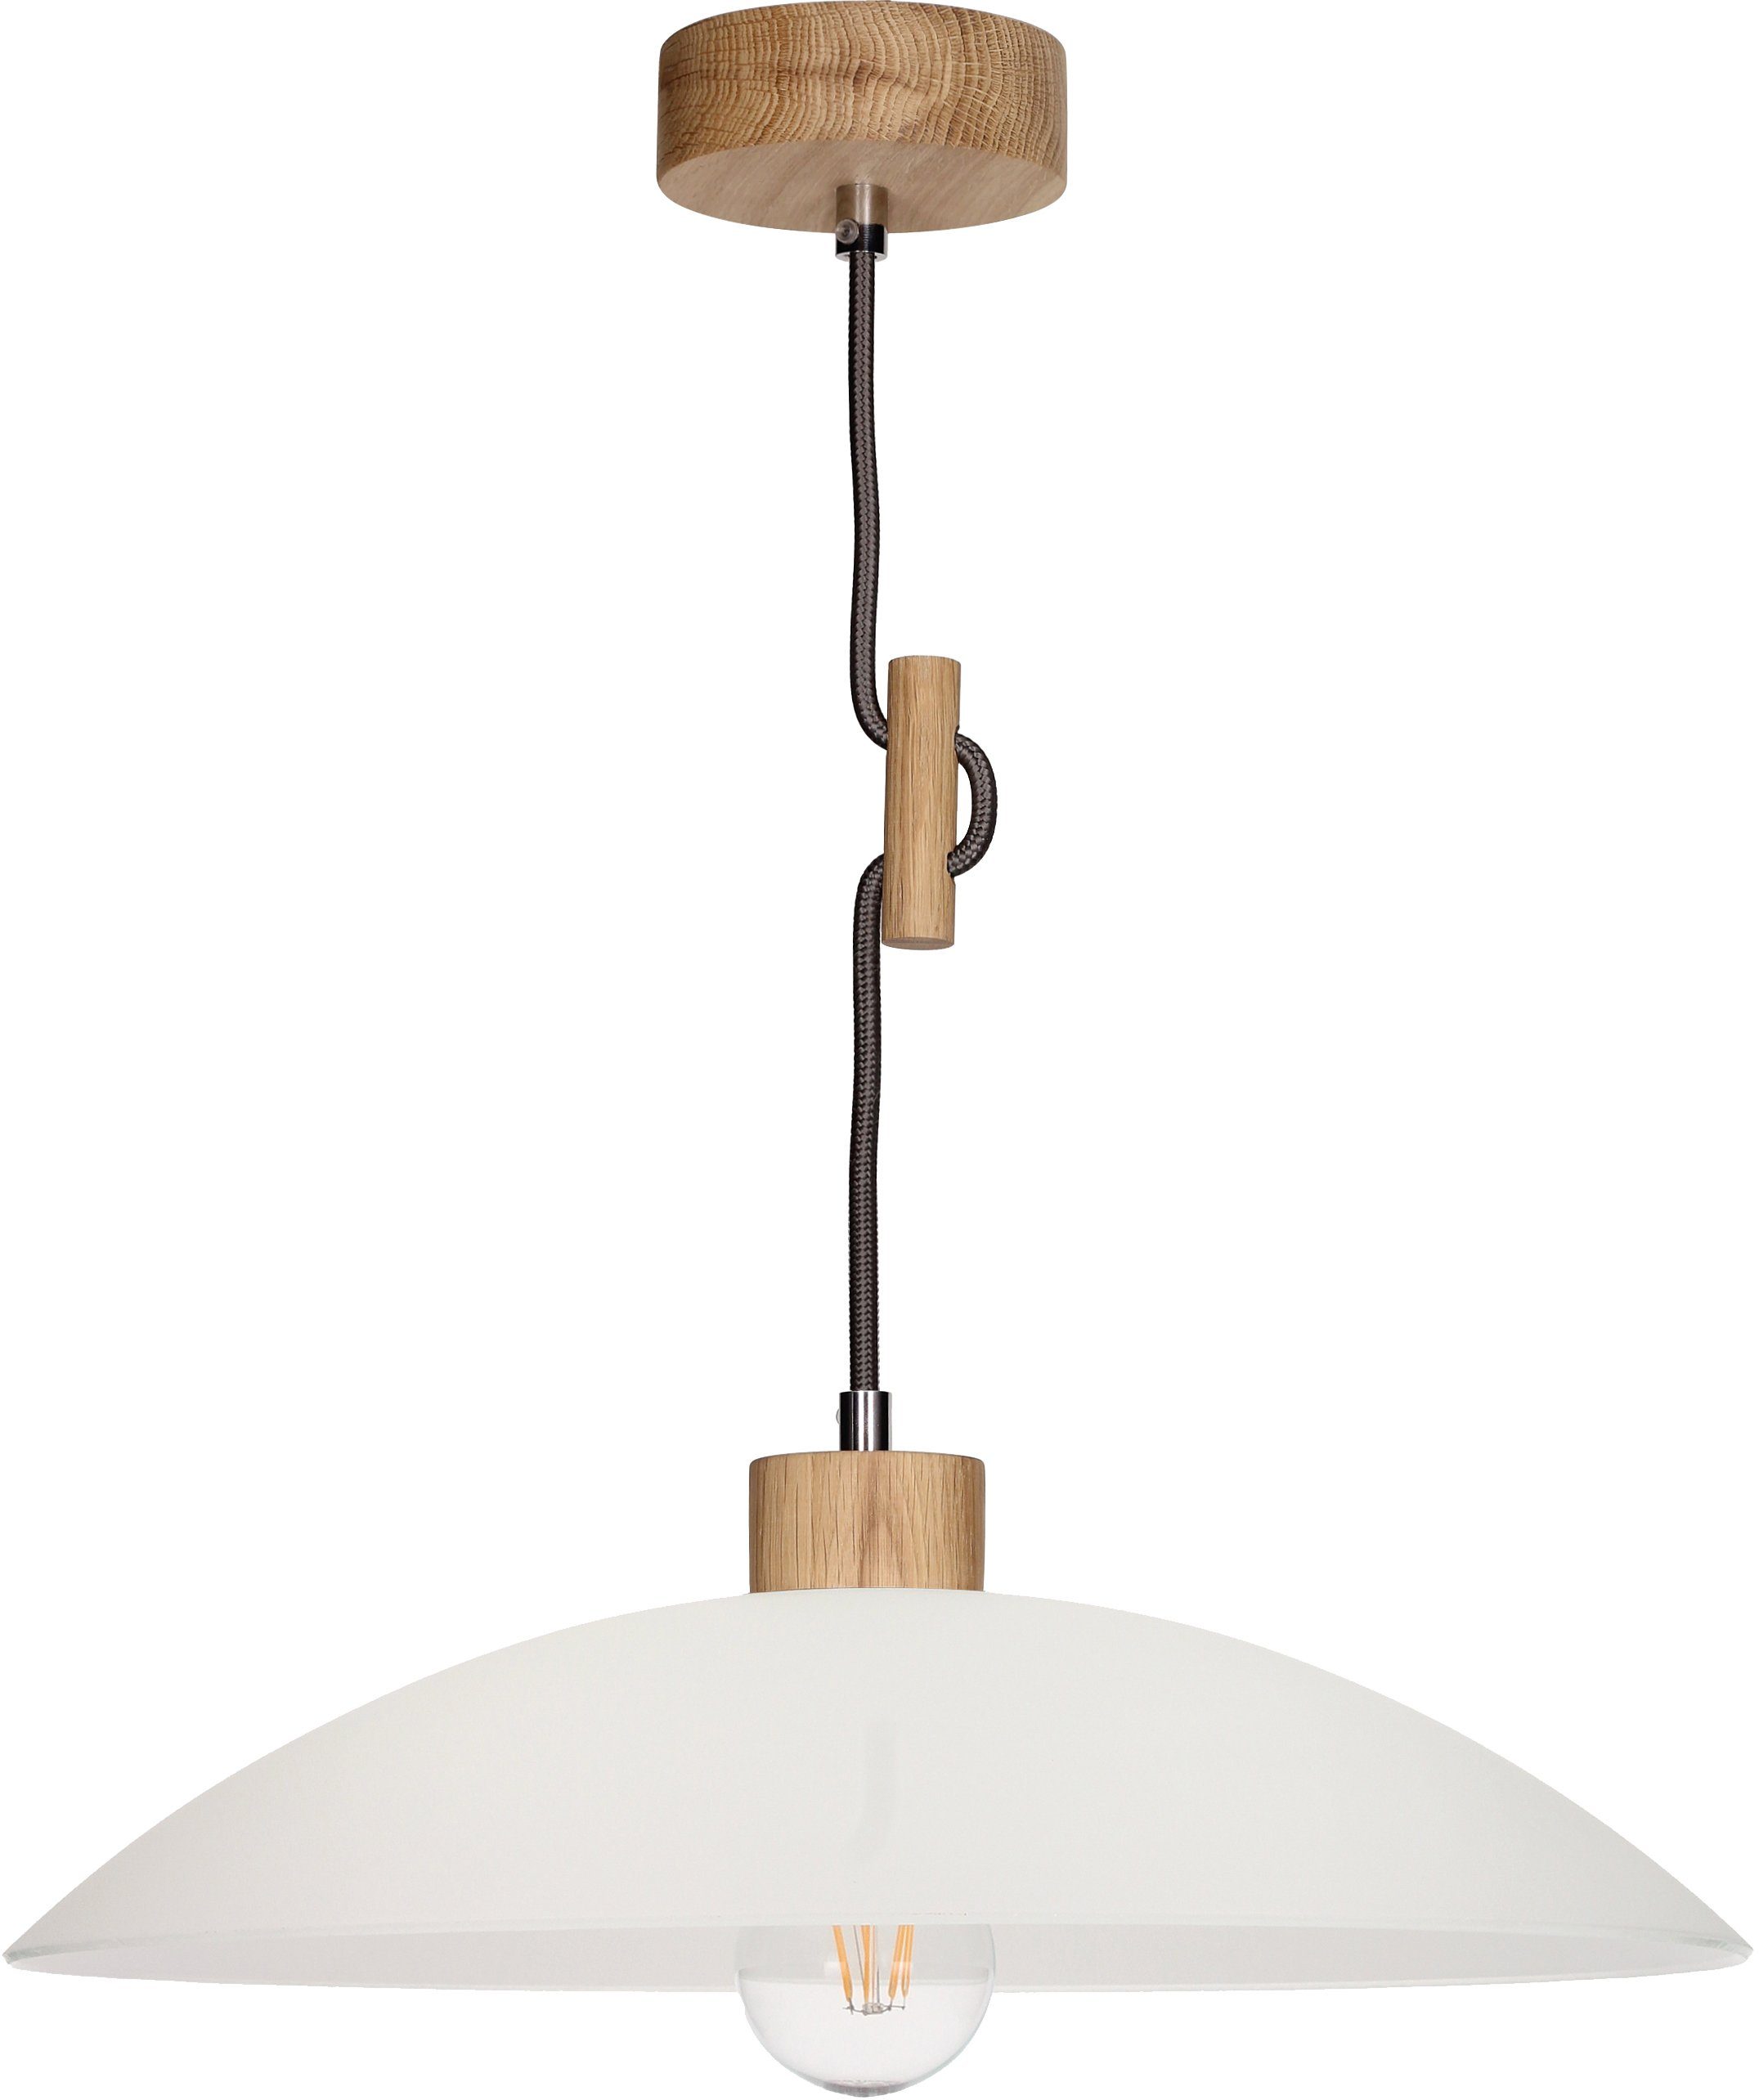 SPOT Light Hanglamp JONA Hanglamp, natuurproduct van eikenhout, duurzaam met FSC®-certificaat, hoogwaardige kap van glas, Made in EU